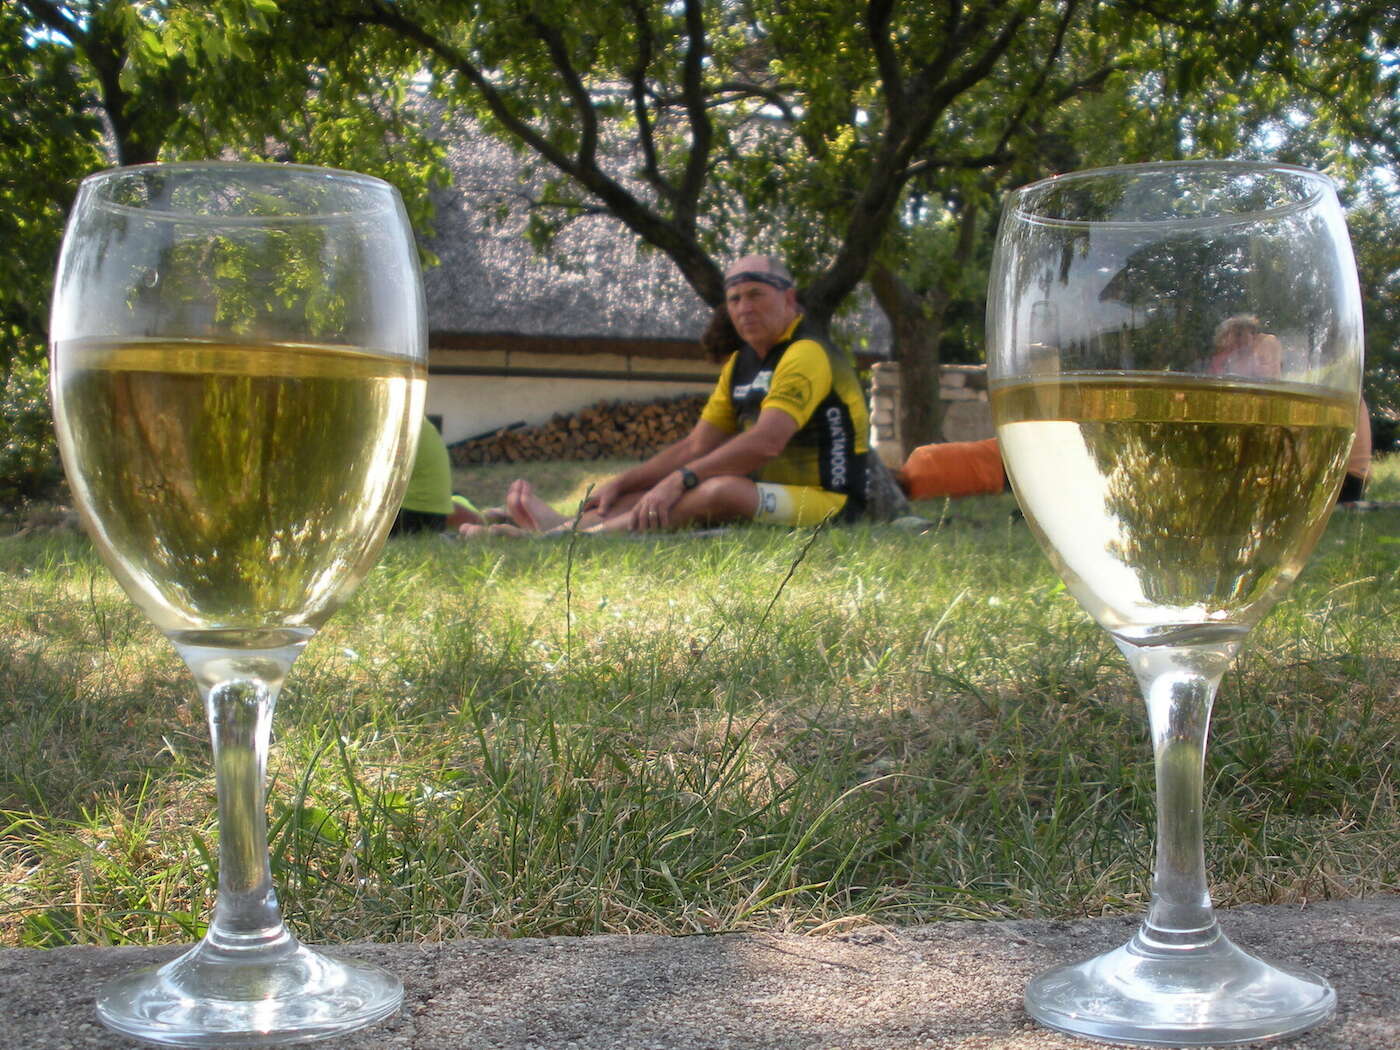 Balaton Wine and Bike